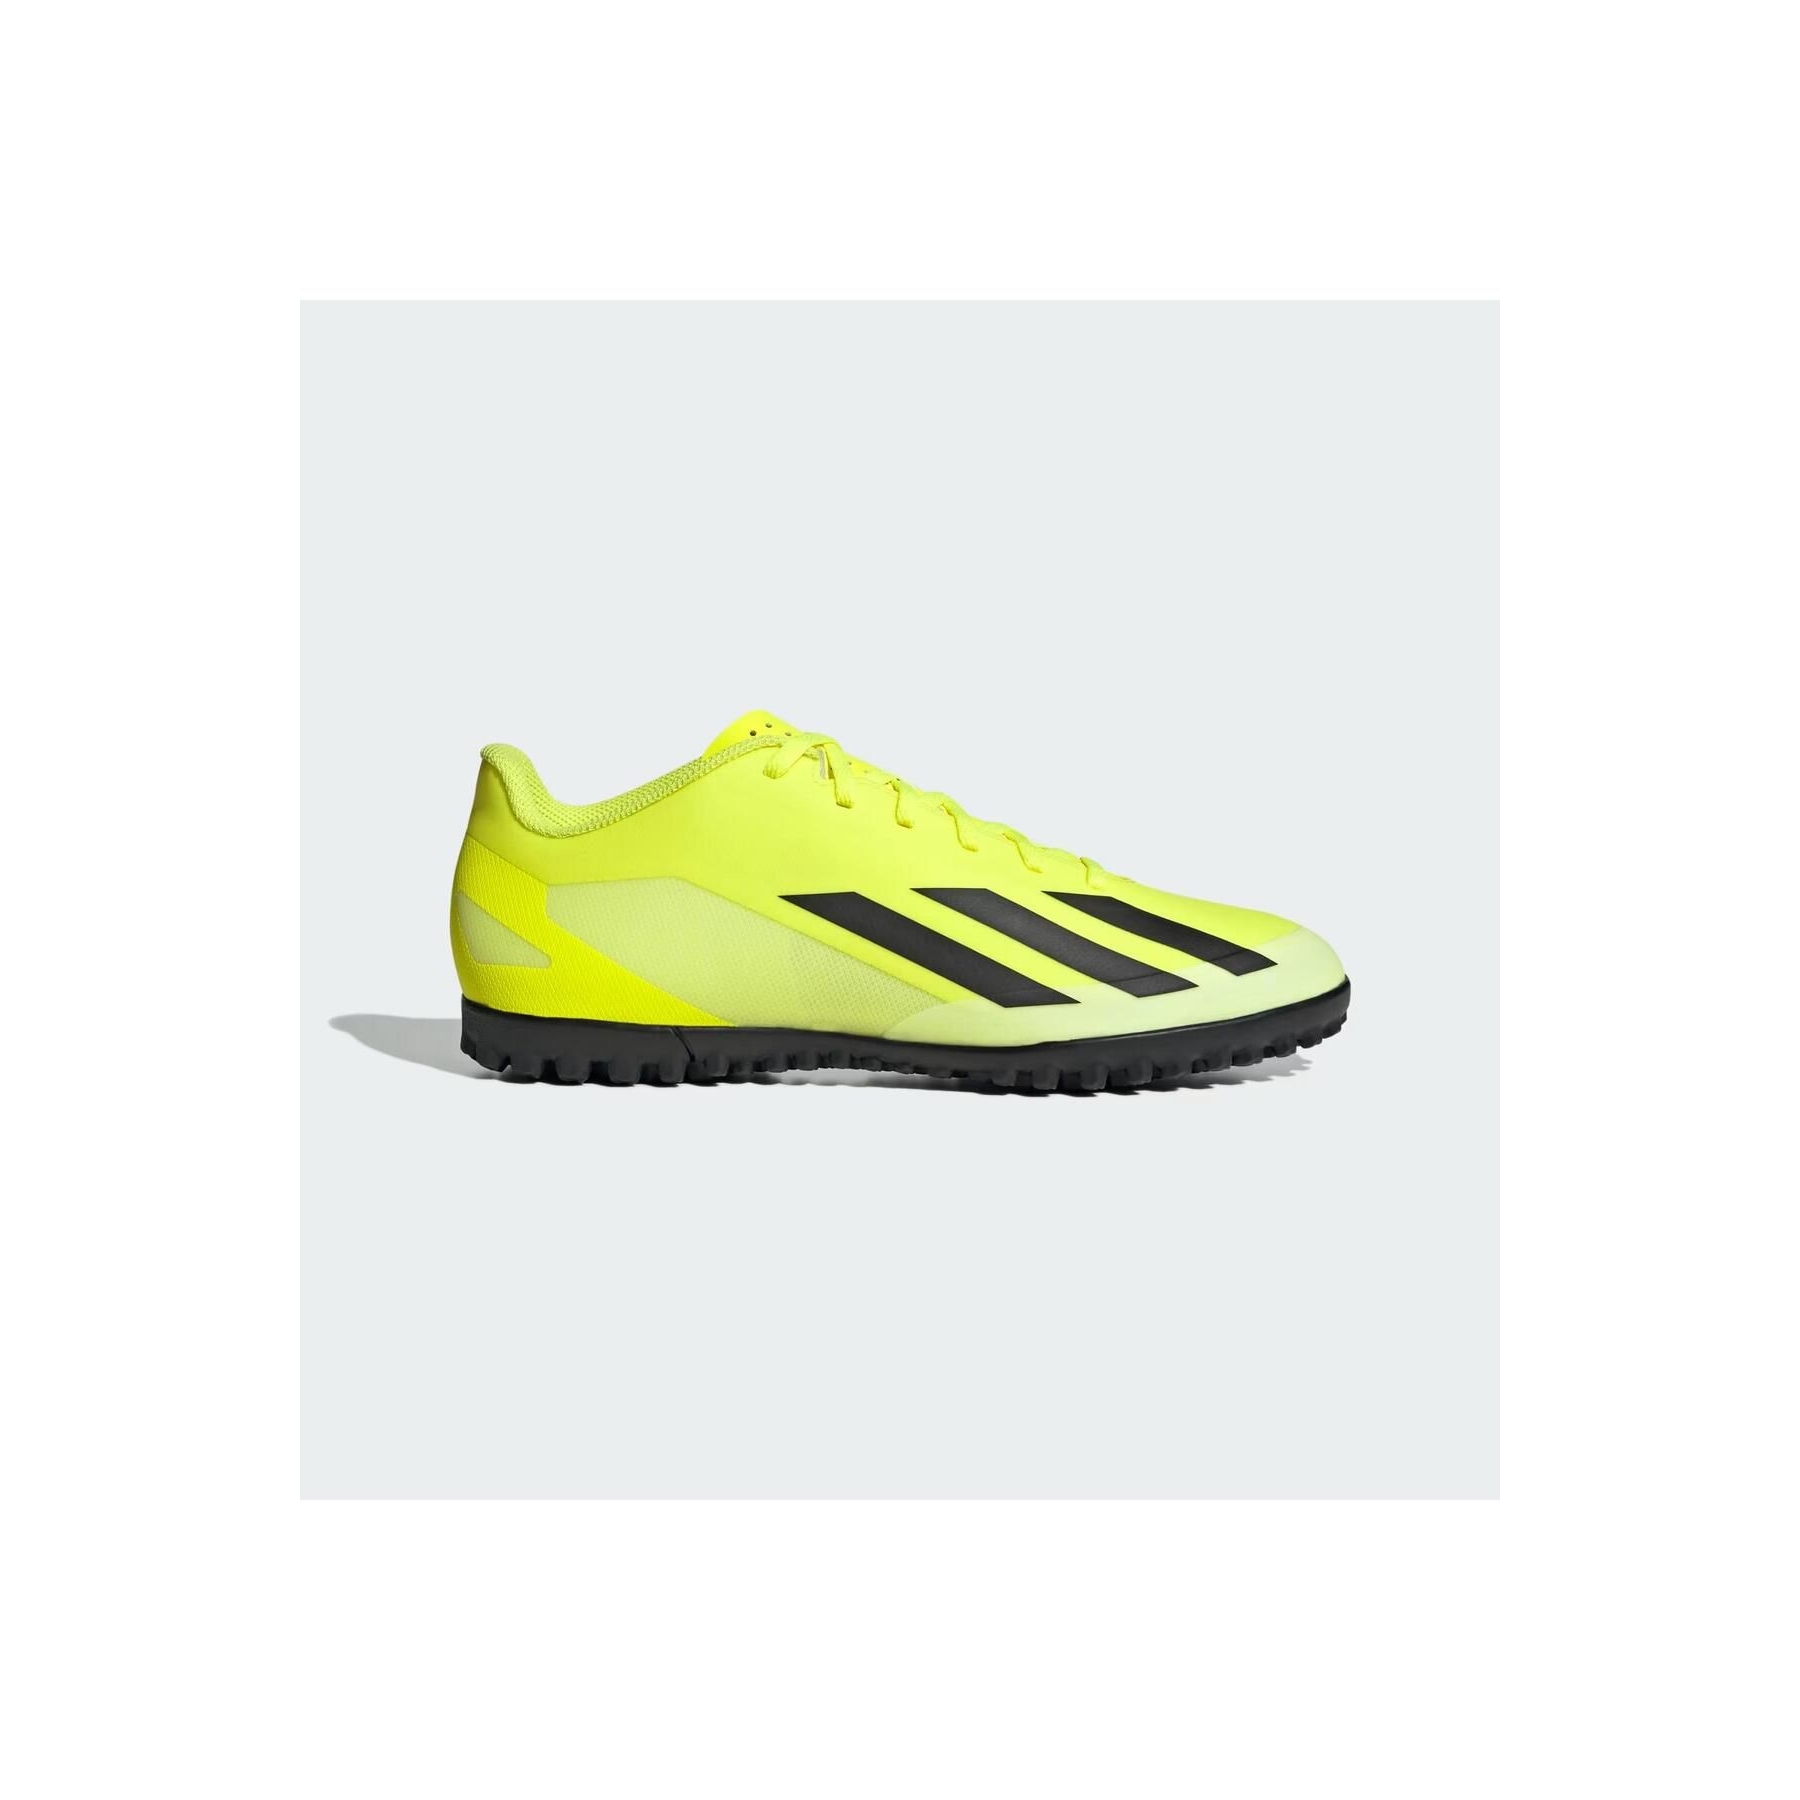 adidas Crazyfast Club Erkek Sarı Halı Saha Ayakkabısı (IF0723)